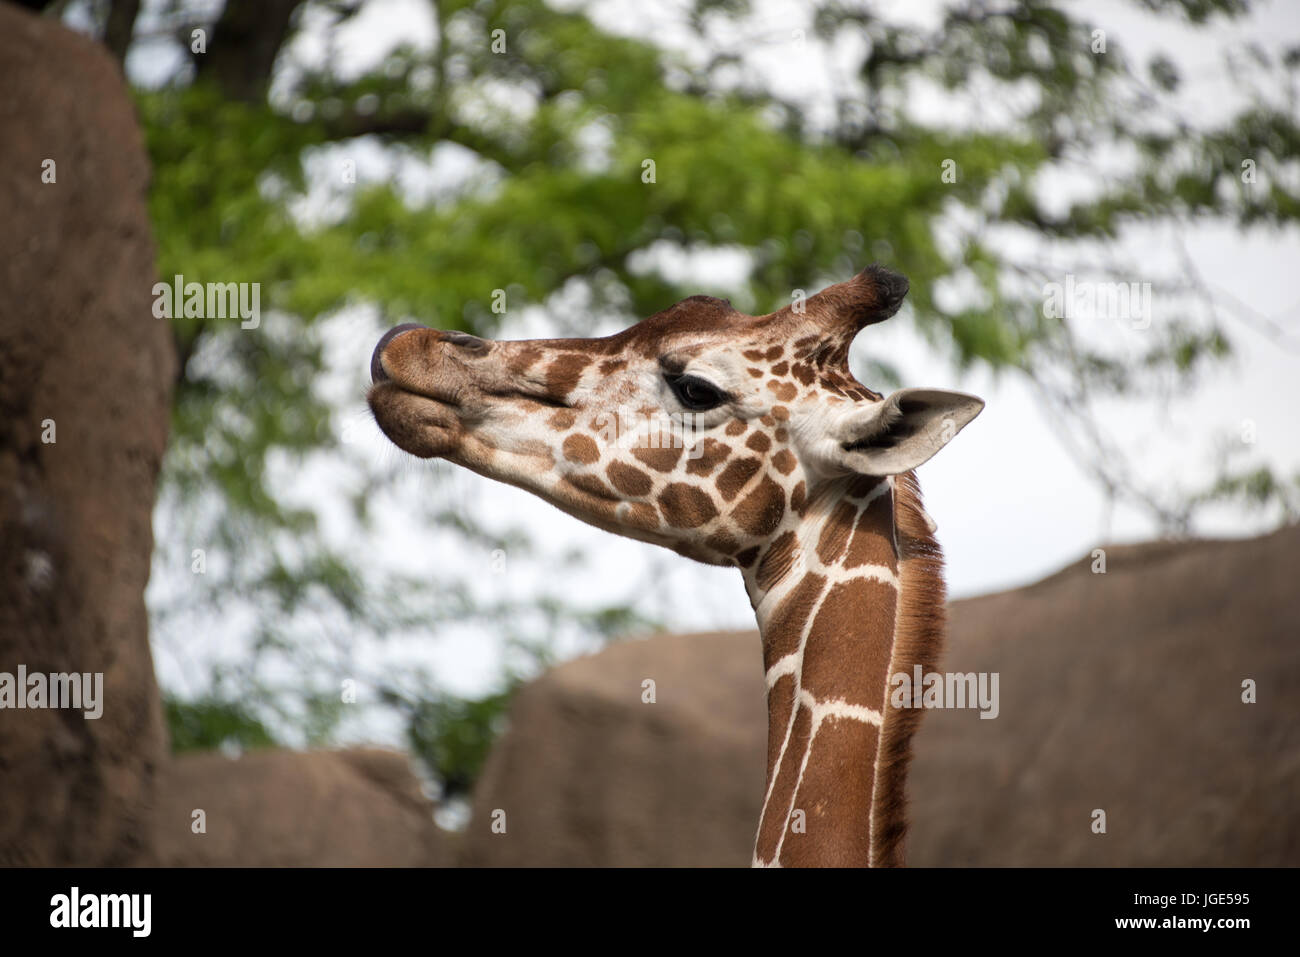 La testa di un prigioniero maschio giraffa reticolata in profilo in un zoo enclosure con rocce e un albero dietro di essa Foto Stock